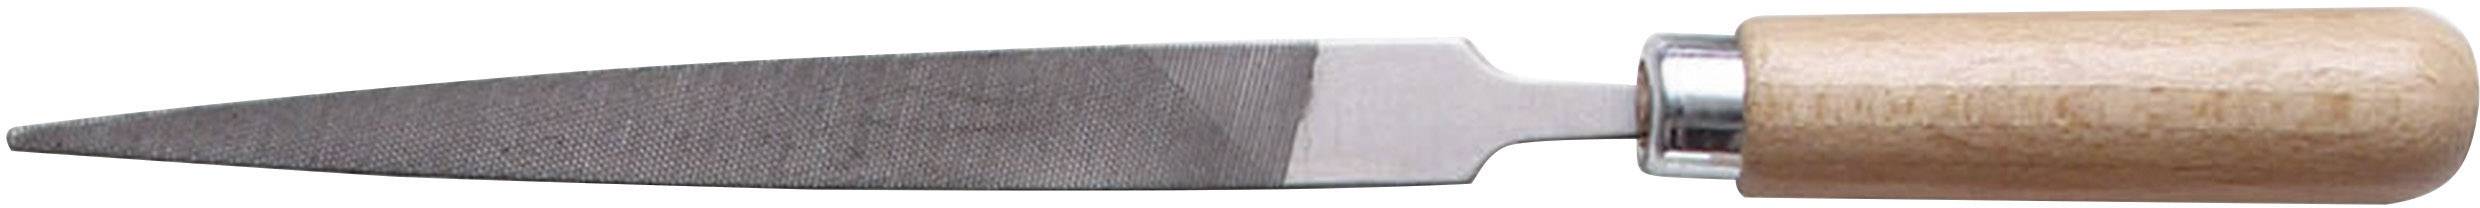 BERNSTEIN Schlüsselfeile flach-spitz Bernstein 5-232 100 mm